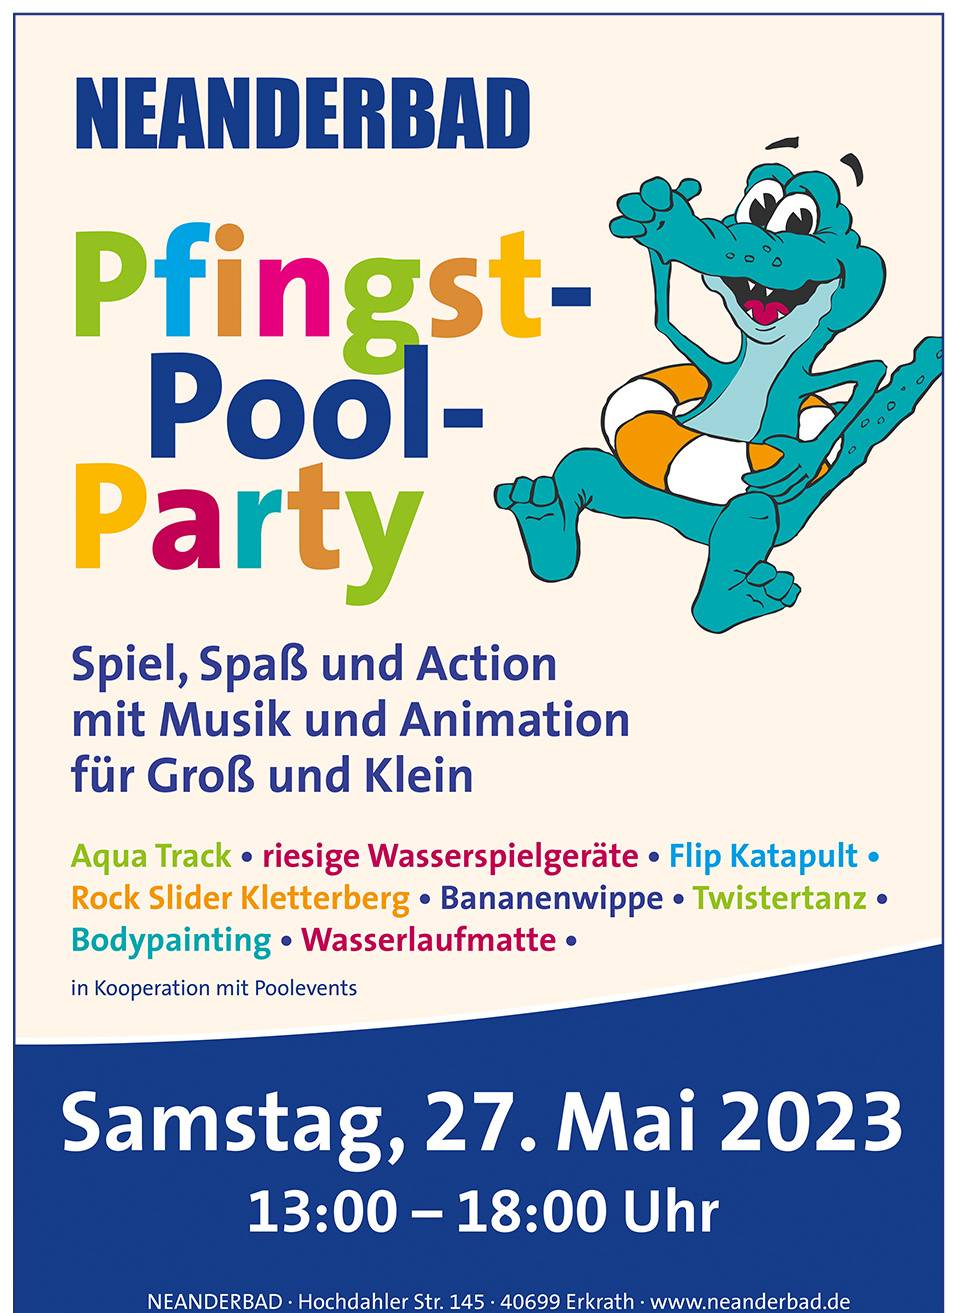 Spiel, Spaß und Action mit Animation von 13 bis 18 Uhr: Pfingst-Pool-Party im Neanderbad am 27. Mai